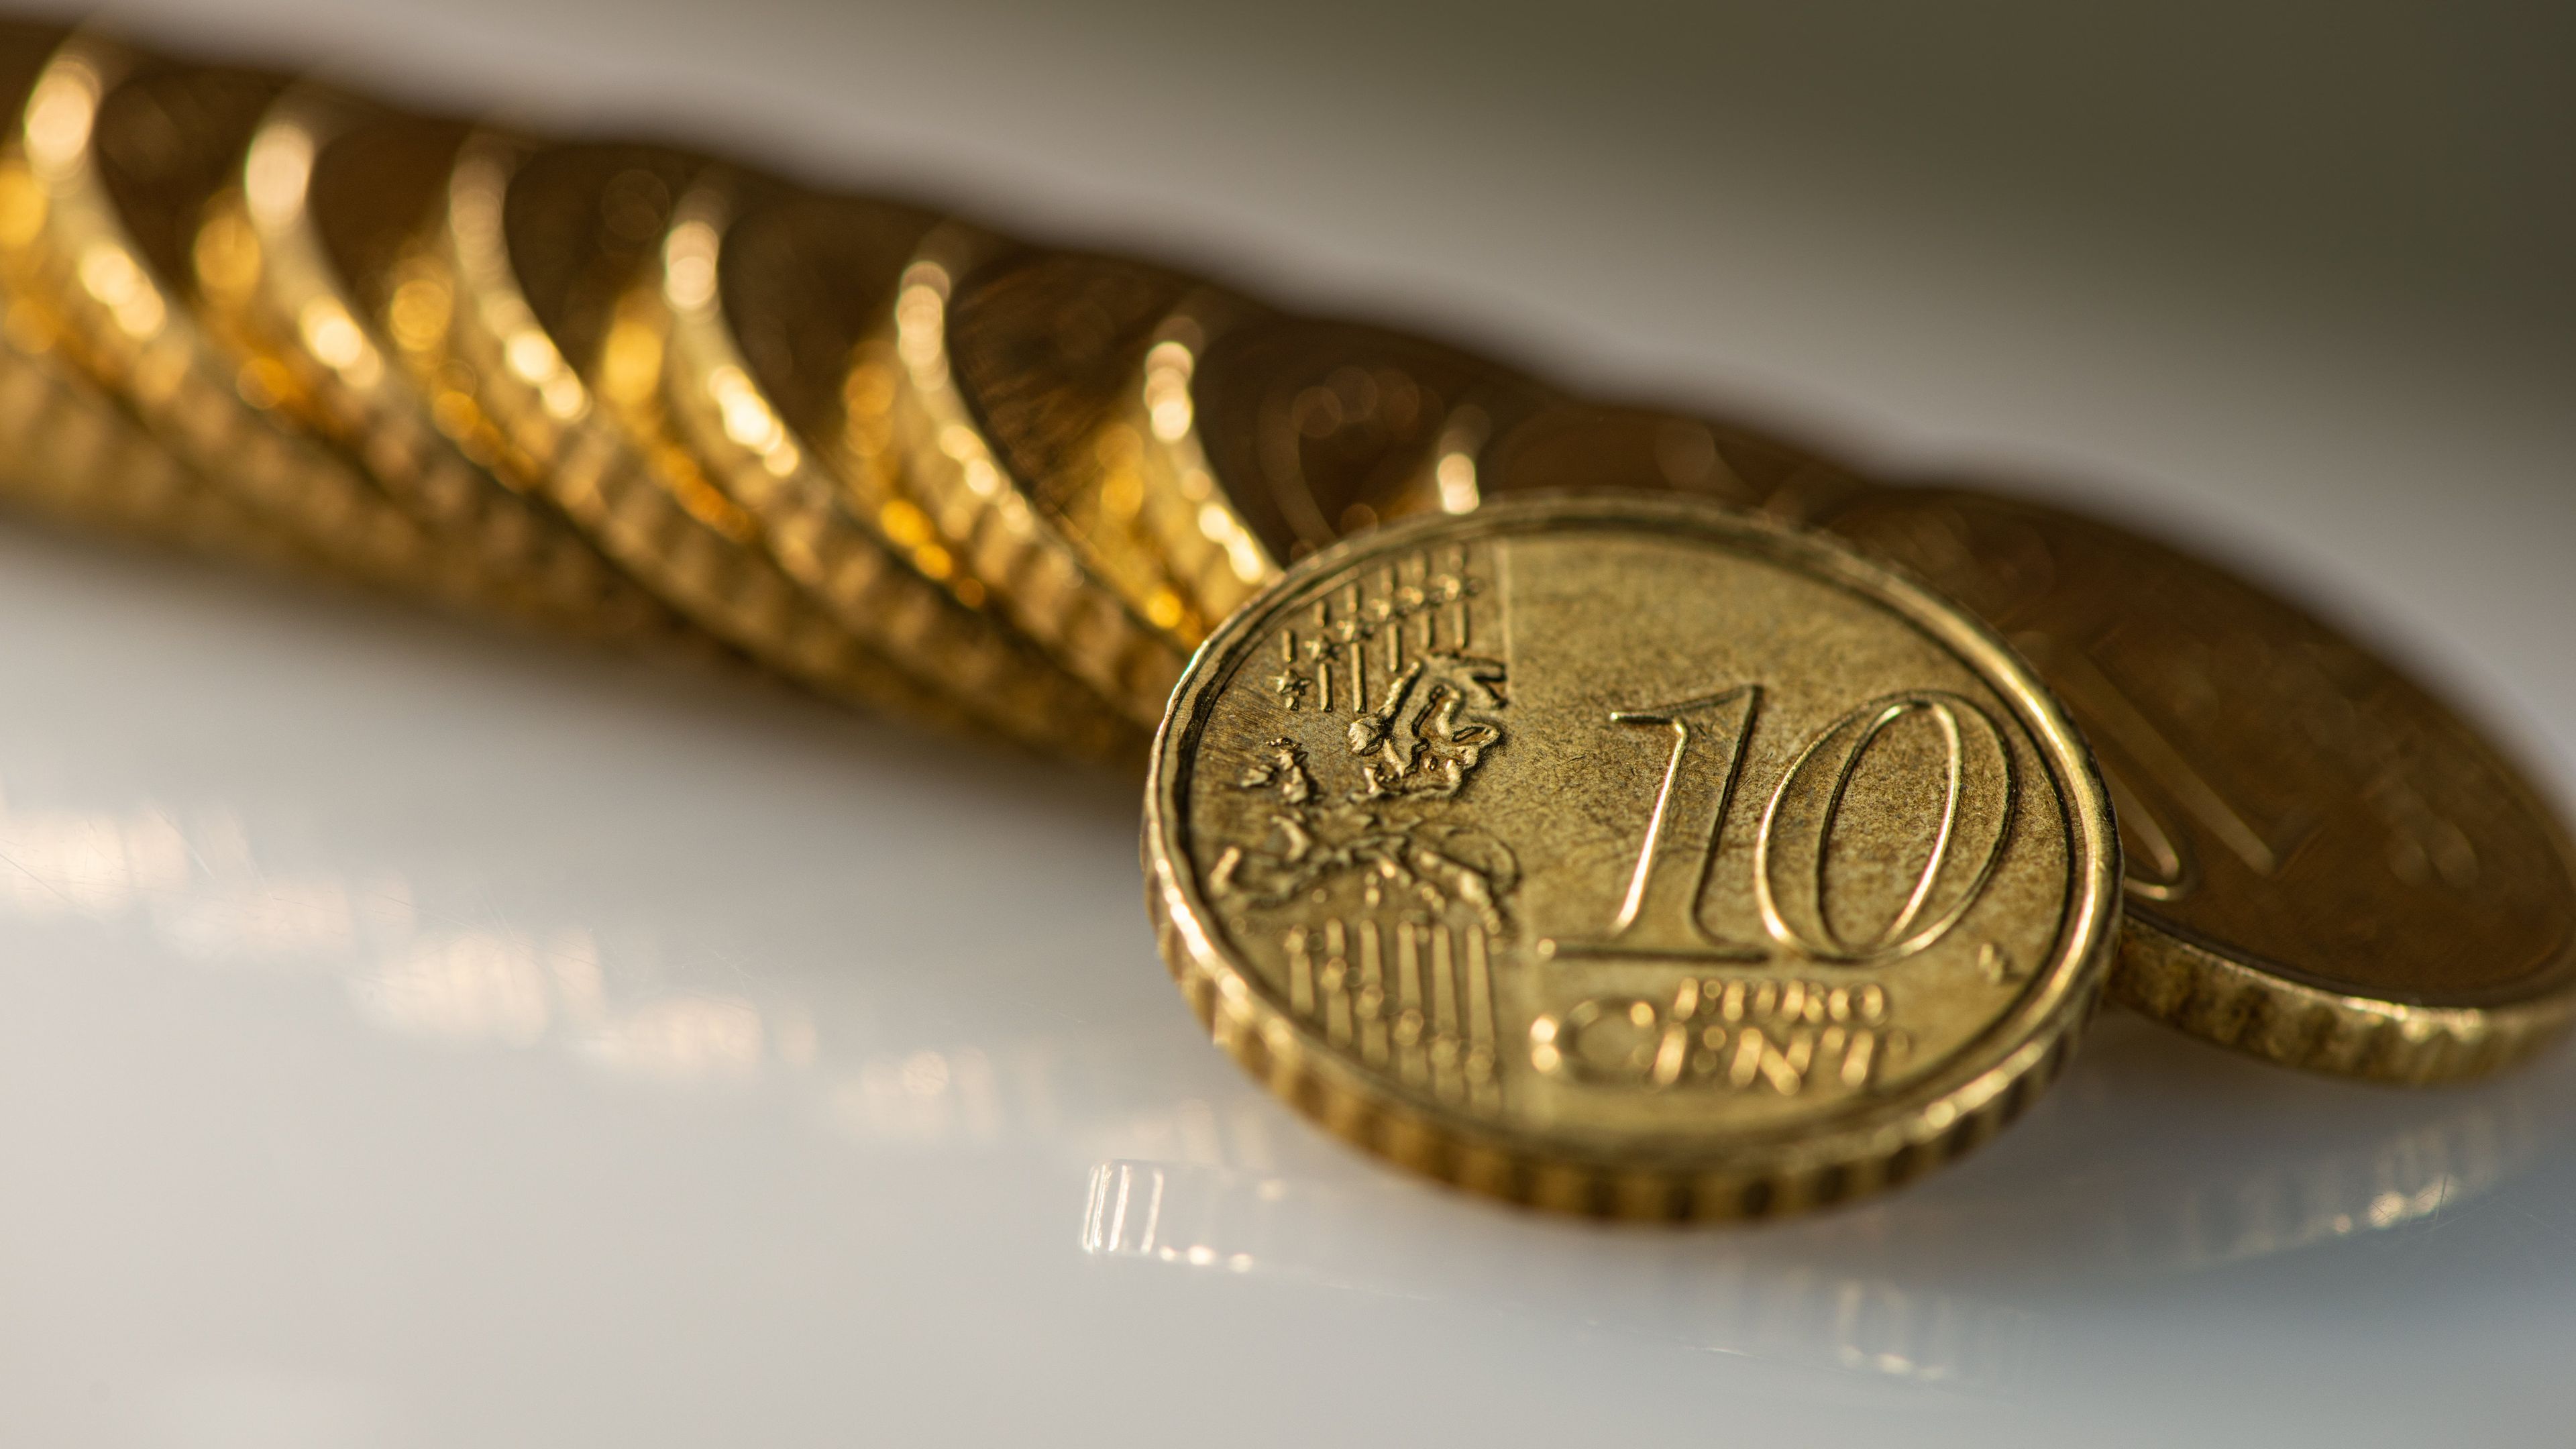 Monedas de 10 céntimos